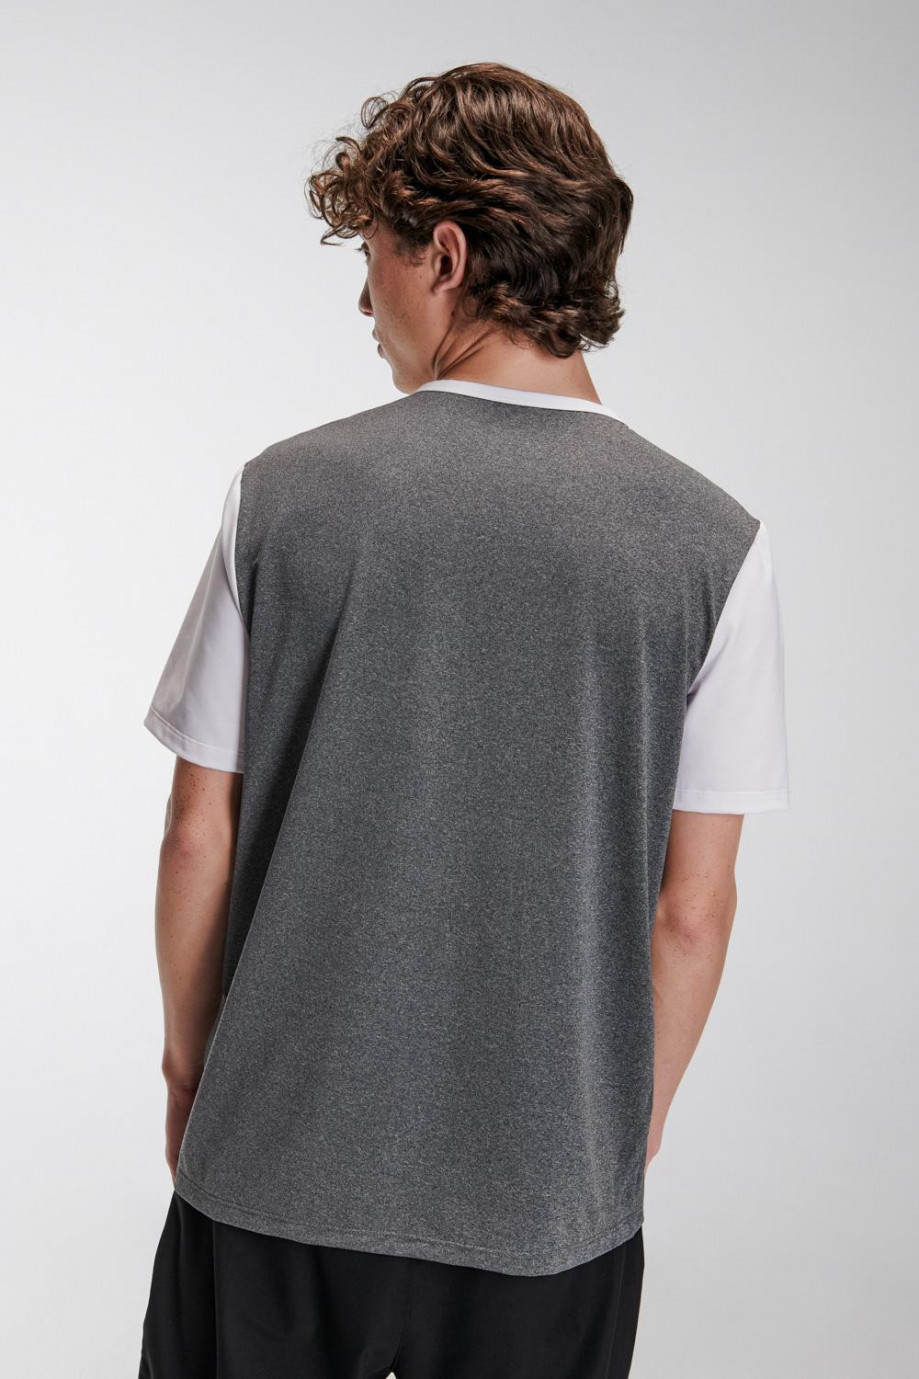 Camiseta fit manga corta, con corte en contraste y estampado sobre el frente.